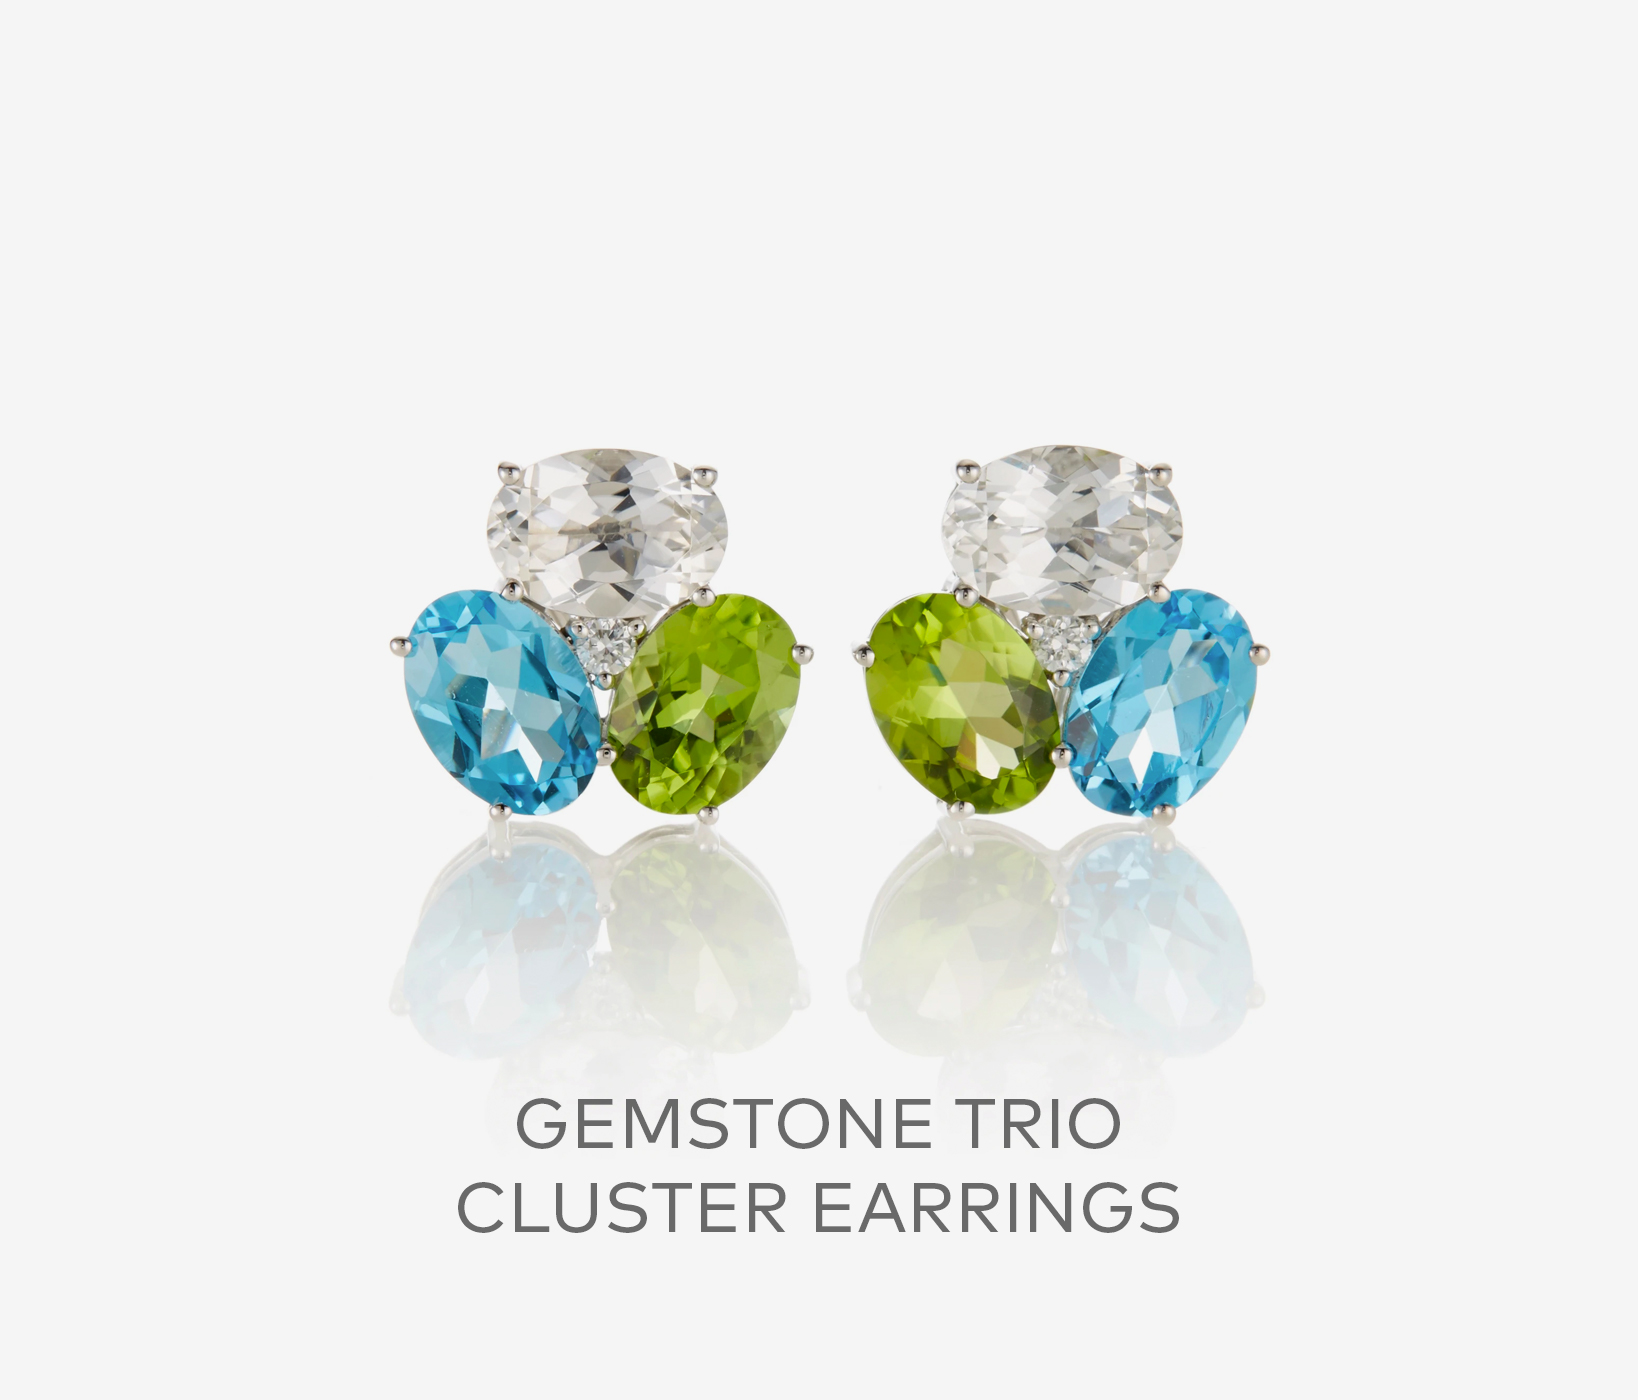 Gemstone Trio Cluster Earrings